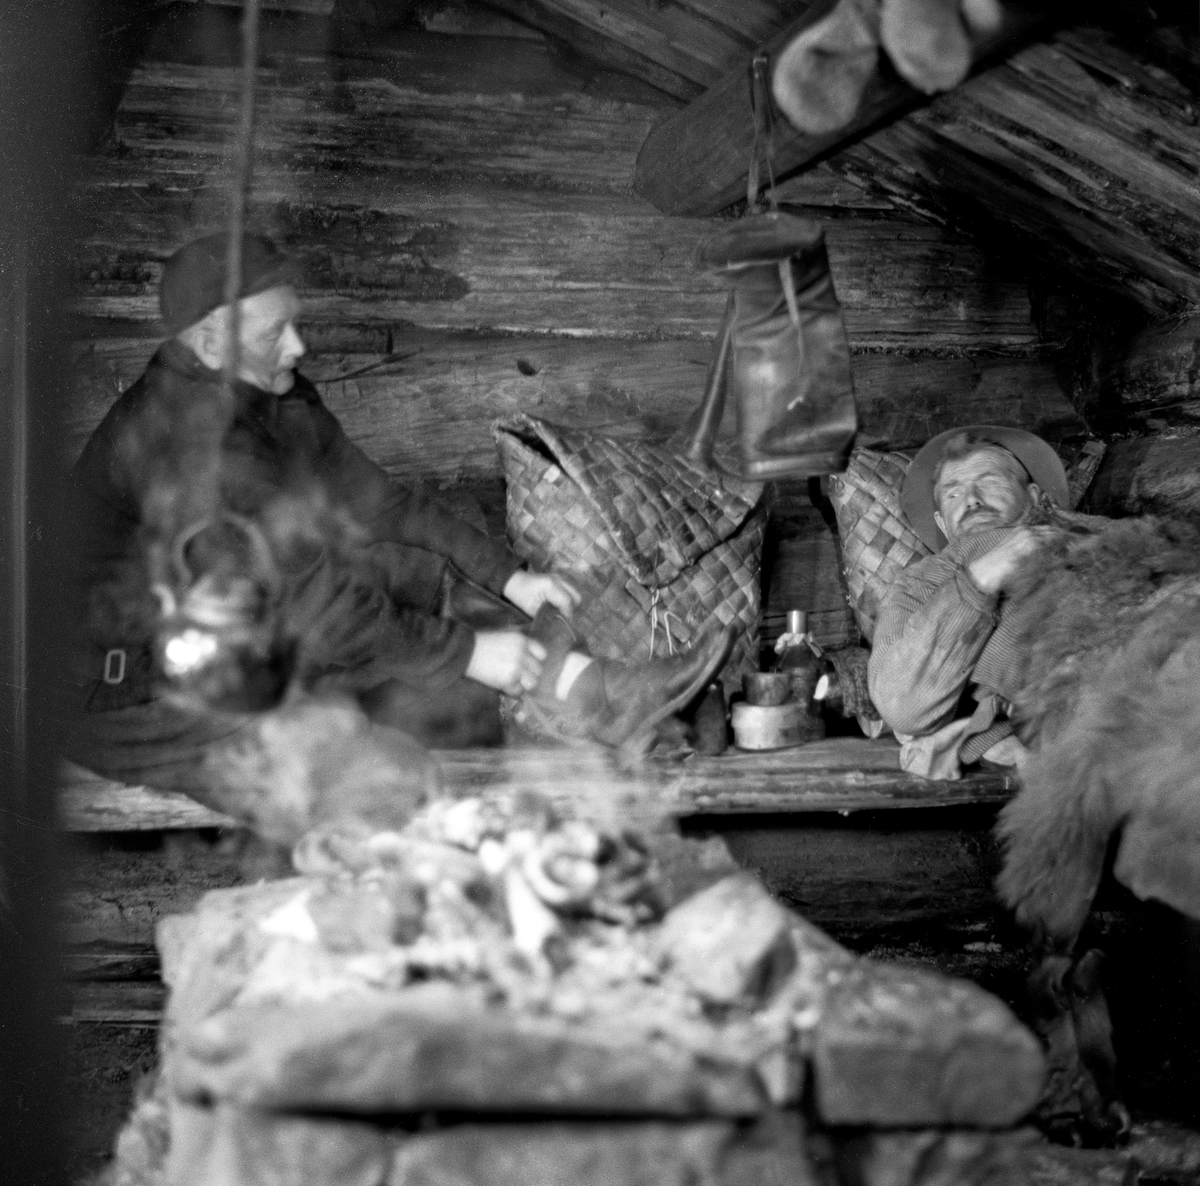 Kviling i koie, antakelig den såkalte «bjønnbua» på Norsk Skogbruksmuseum. Karene på koiebriskene er Ivan Sandberg og Martinus Nordal, og bildet er antakelig tatt i forbindelse med innspillinga av dokumentarfilmen «Liv og husvær i skogen», antakelig vinteren 1961-62.  Karene hadde gjort opp varme på eldpallen, og det hang en kaffekjel i ei skjæring ned over varmen.  Sandberg satt på brisken i vadmelsklær, tilsynelatende i ferd med å ta av seg våte sko, mens Nordal hadde lagt seg på brisken, under en skinnfell.  Begge hadde neverkonter. 

Martinus Nordal var skogsarbeider, som også markerte seg med et engasjement i fagorganisasjonen «Skog og Land».  Da dette fotografiet ble tatt var han om lag 72 år gammel og dermed pensjonist, men han stilte opp da man trengte aktører til en film om skogsarbeidernes arbeids- og levekår.  Filmen fikk tittelen «Liv og husvær i skogen».

Litt biografisk informasjon om Martinus Nordal finnes under fanen «Opplysninger».